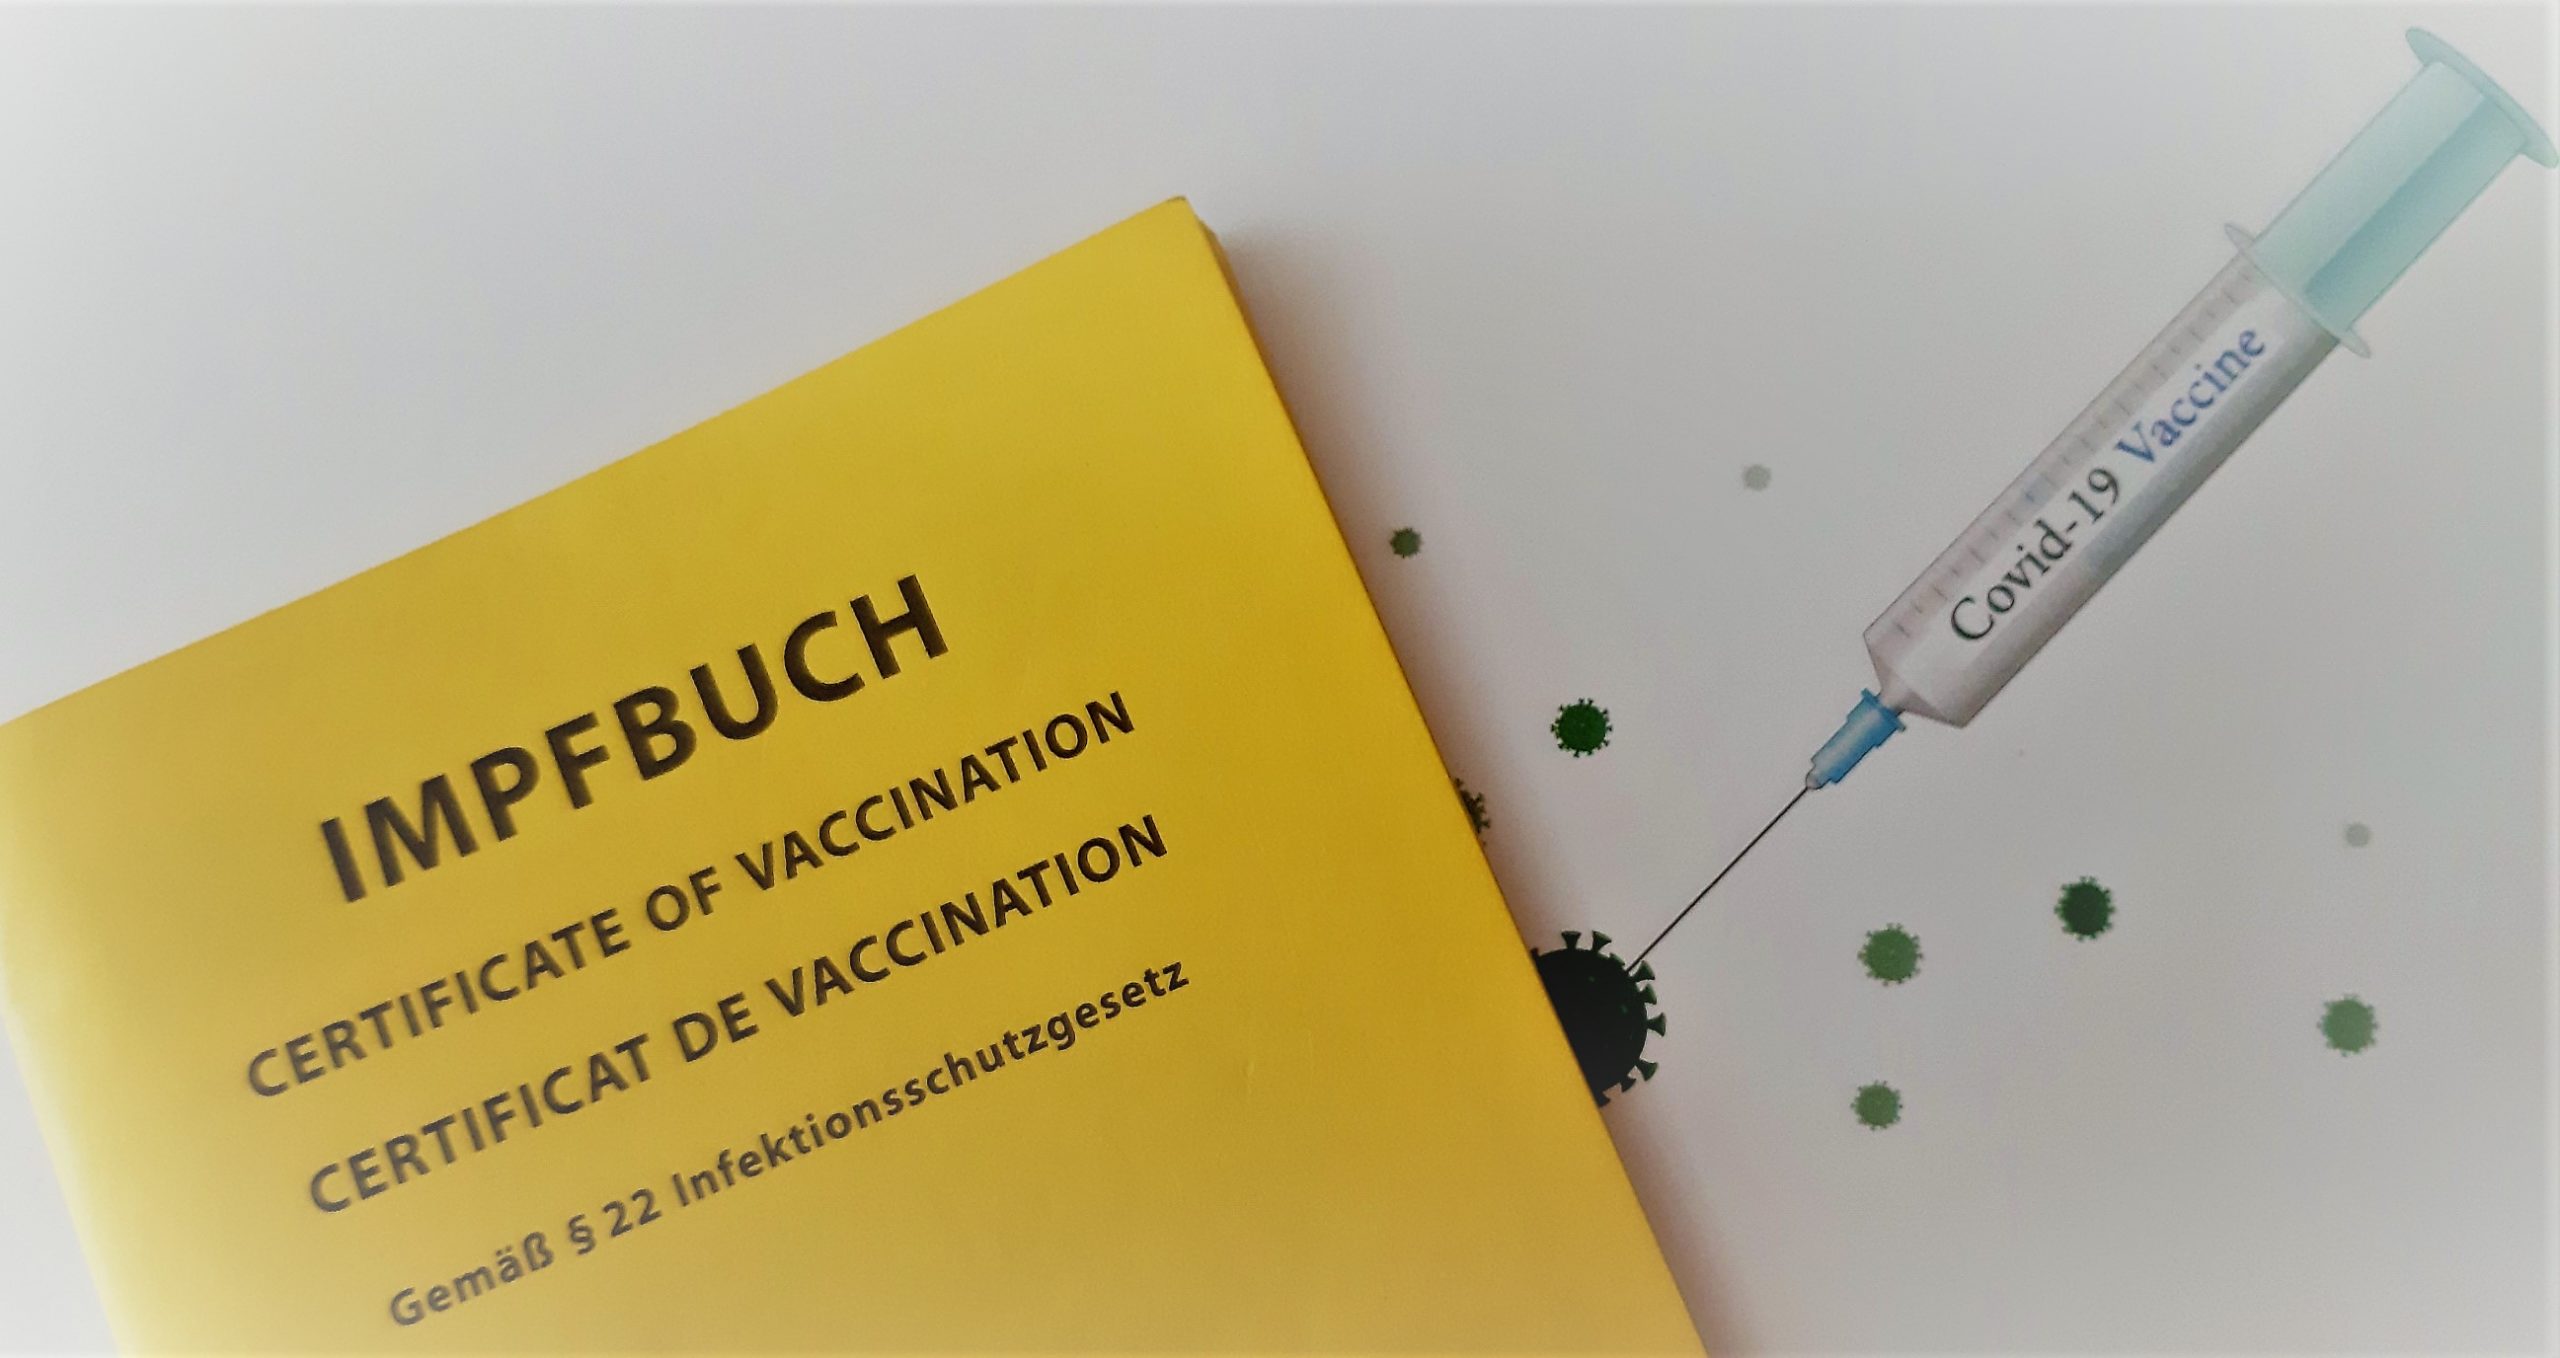 Biontech-Chef rät zu Booster schon nach 3 Monaten – Mitte 2022 weitere Impfung mit auf Omikron angepasstem Vakzin